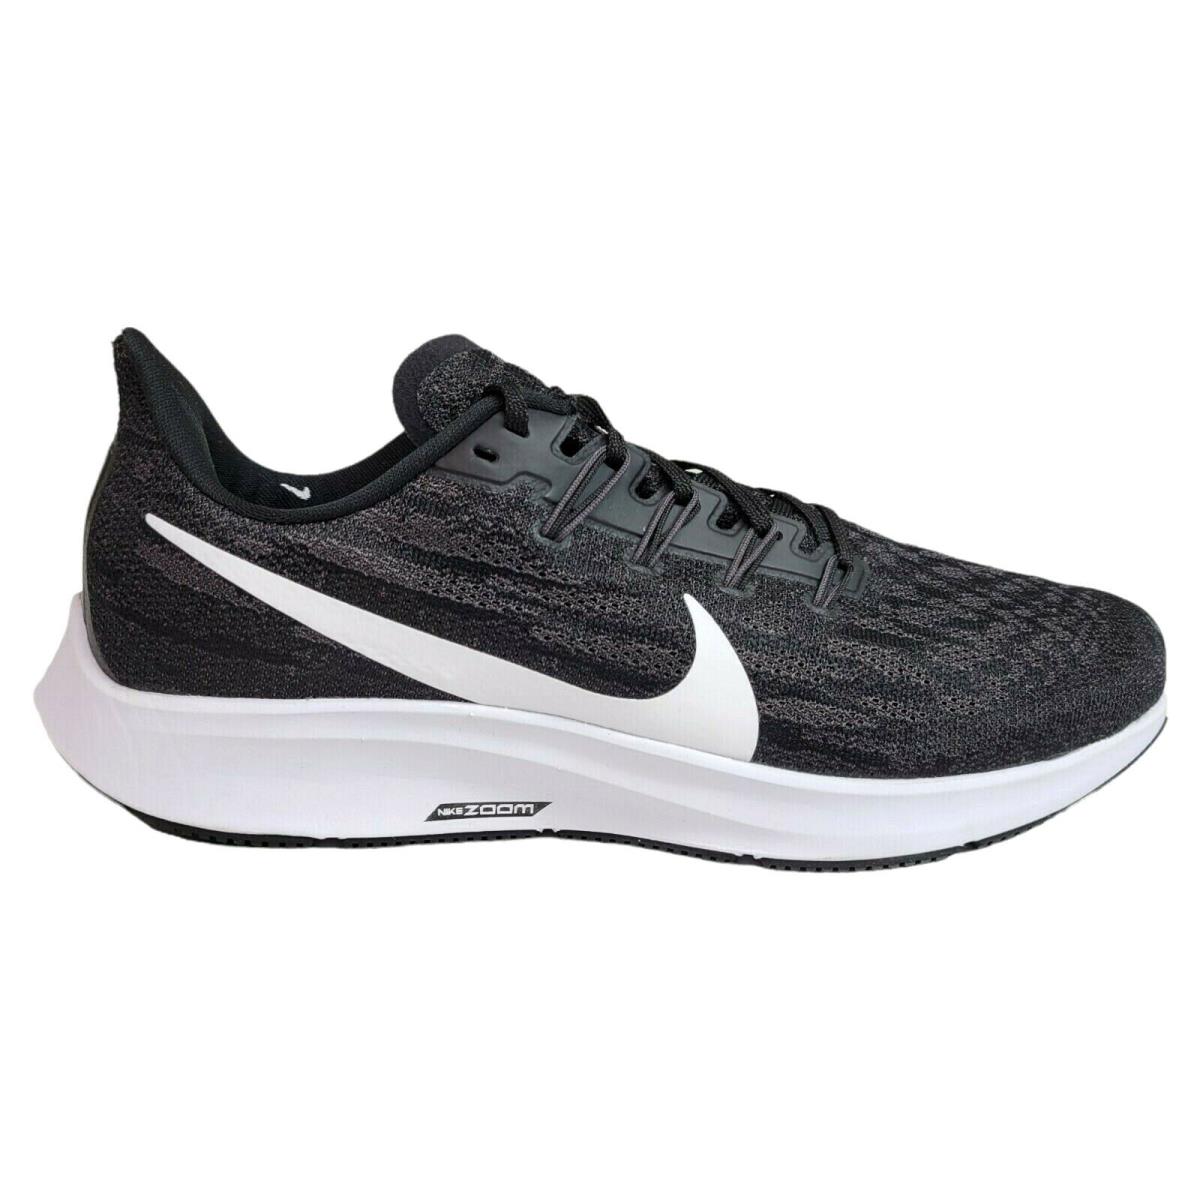 Nike Mens 10 11 13 Air Zoom Pegasus 36 Running Shoes Black White Gray AQ2203-002 - Black